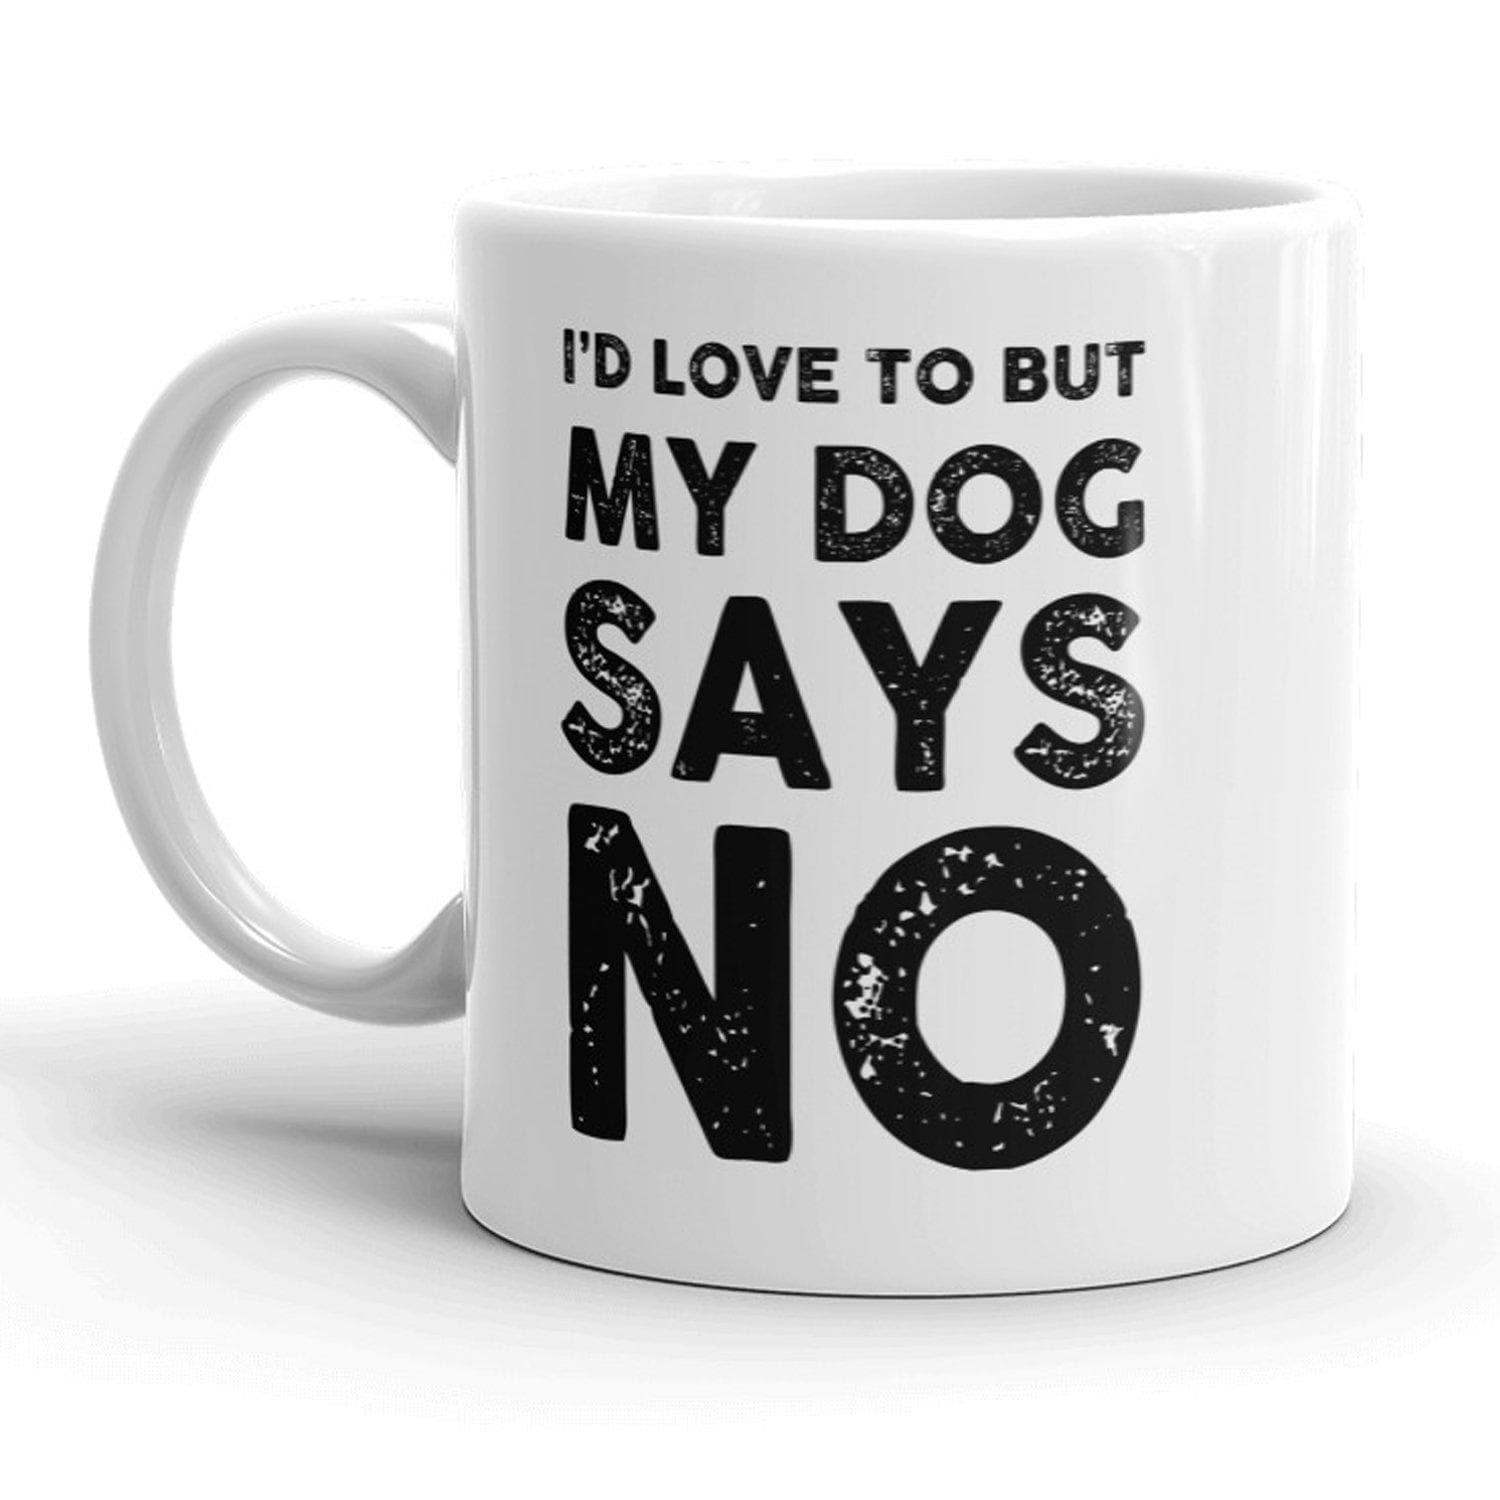 I'd Love To But My Dog Says No Mug - Crazy Dog T-Shirts